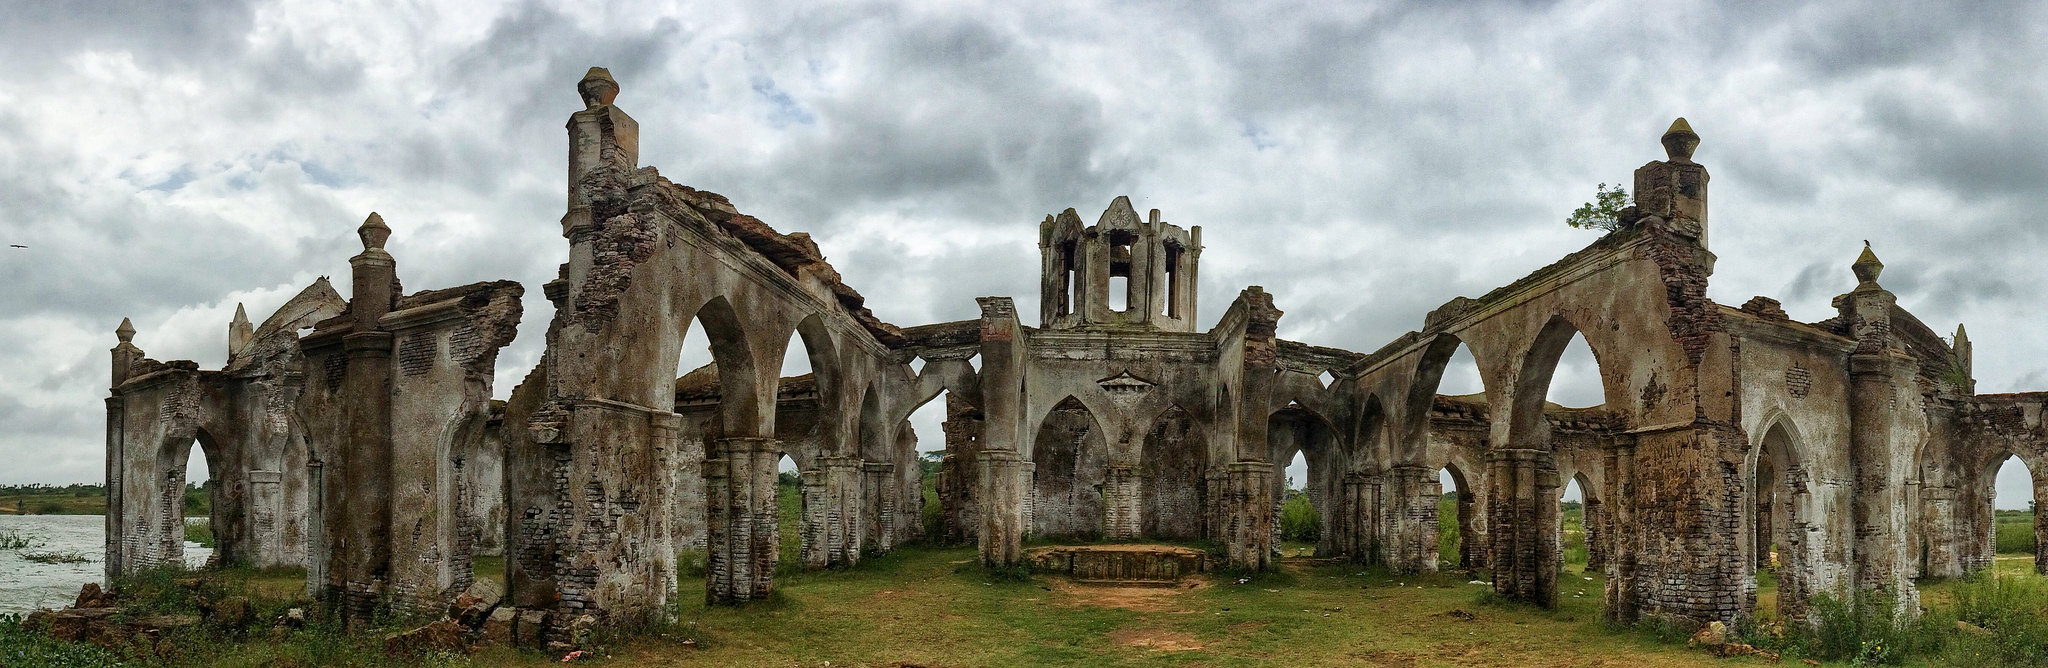 savaari-ruins-of-a-floatinf-church